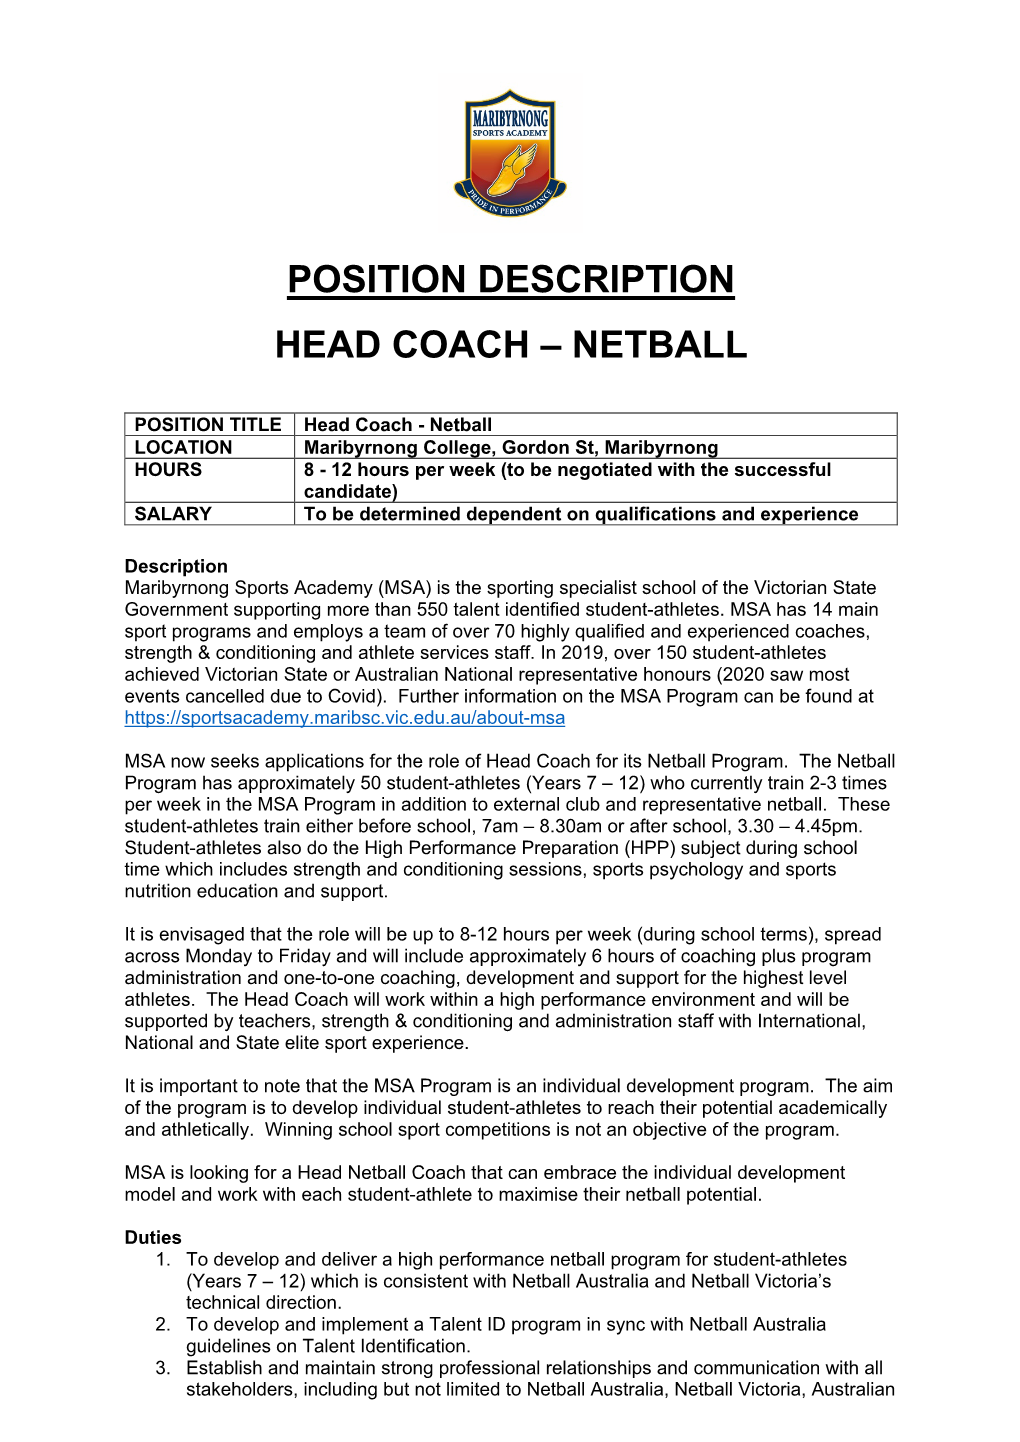 Position Description Head Coach – Netball